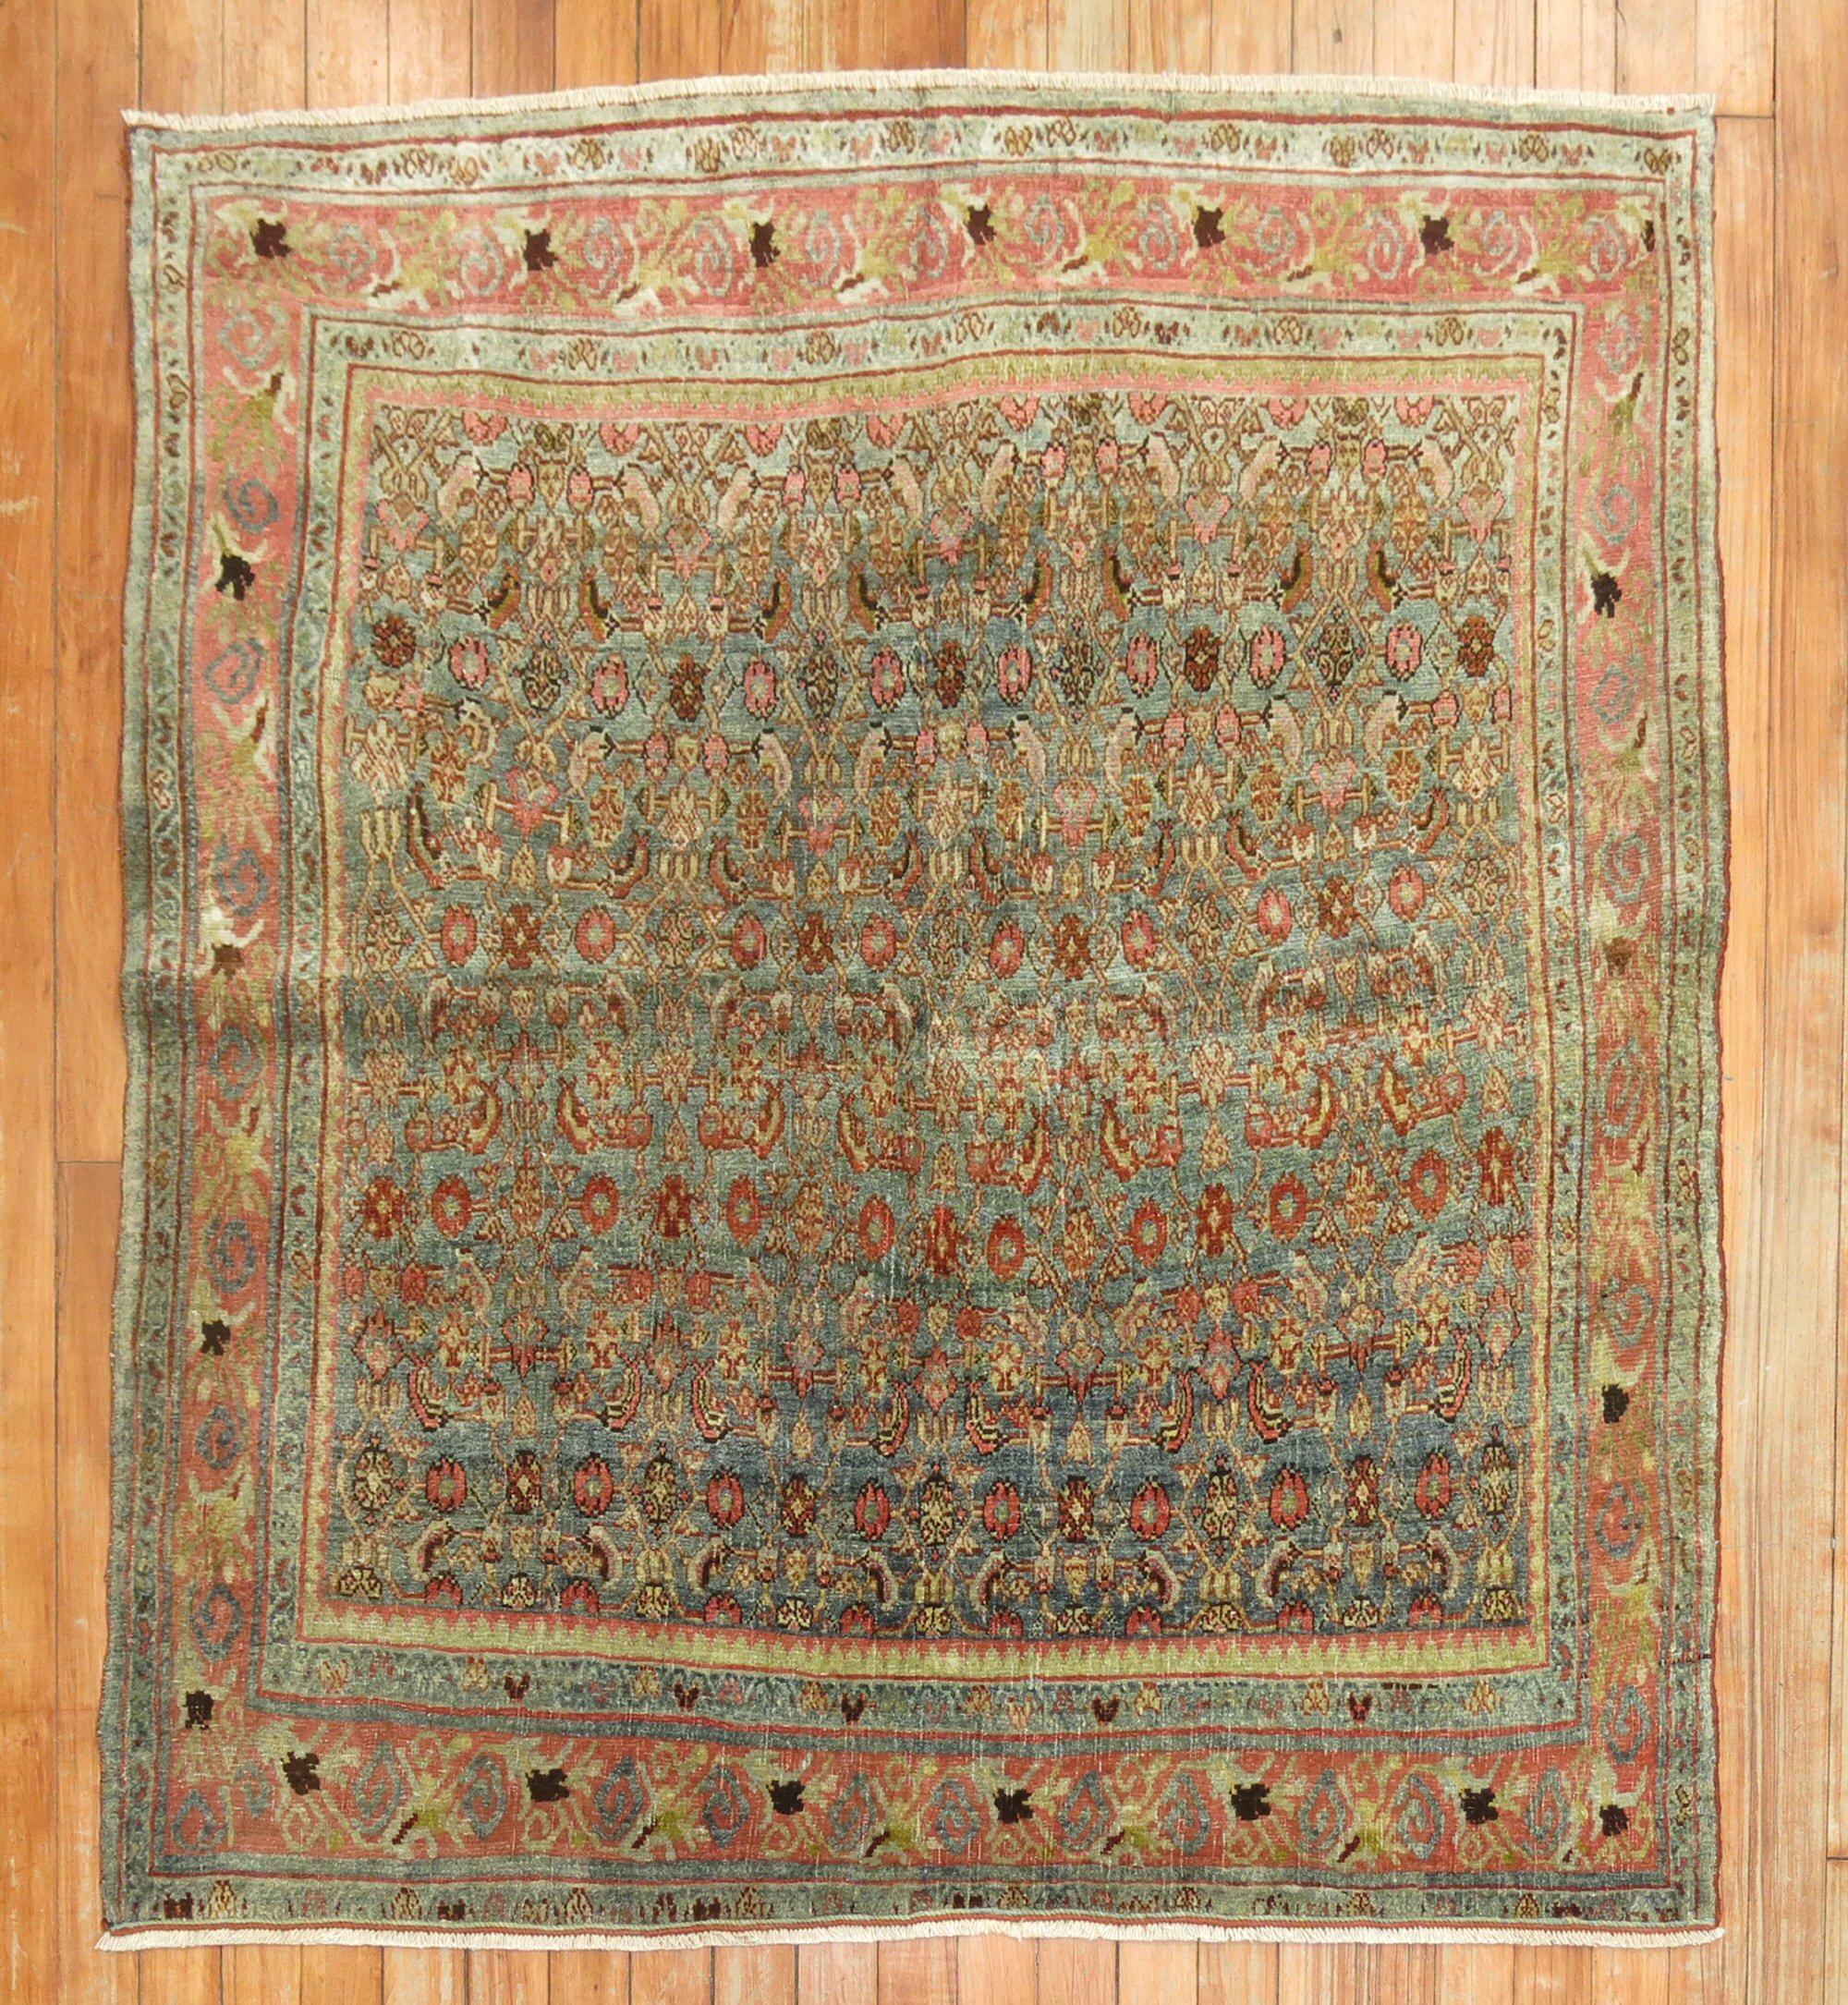 Early 20th-century Persian bidjar square rug.

Measures: 45'' x 48''

